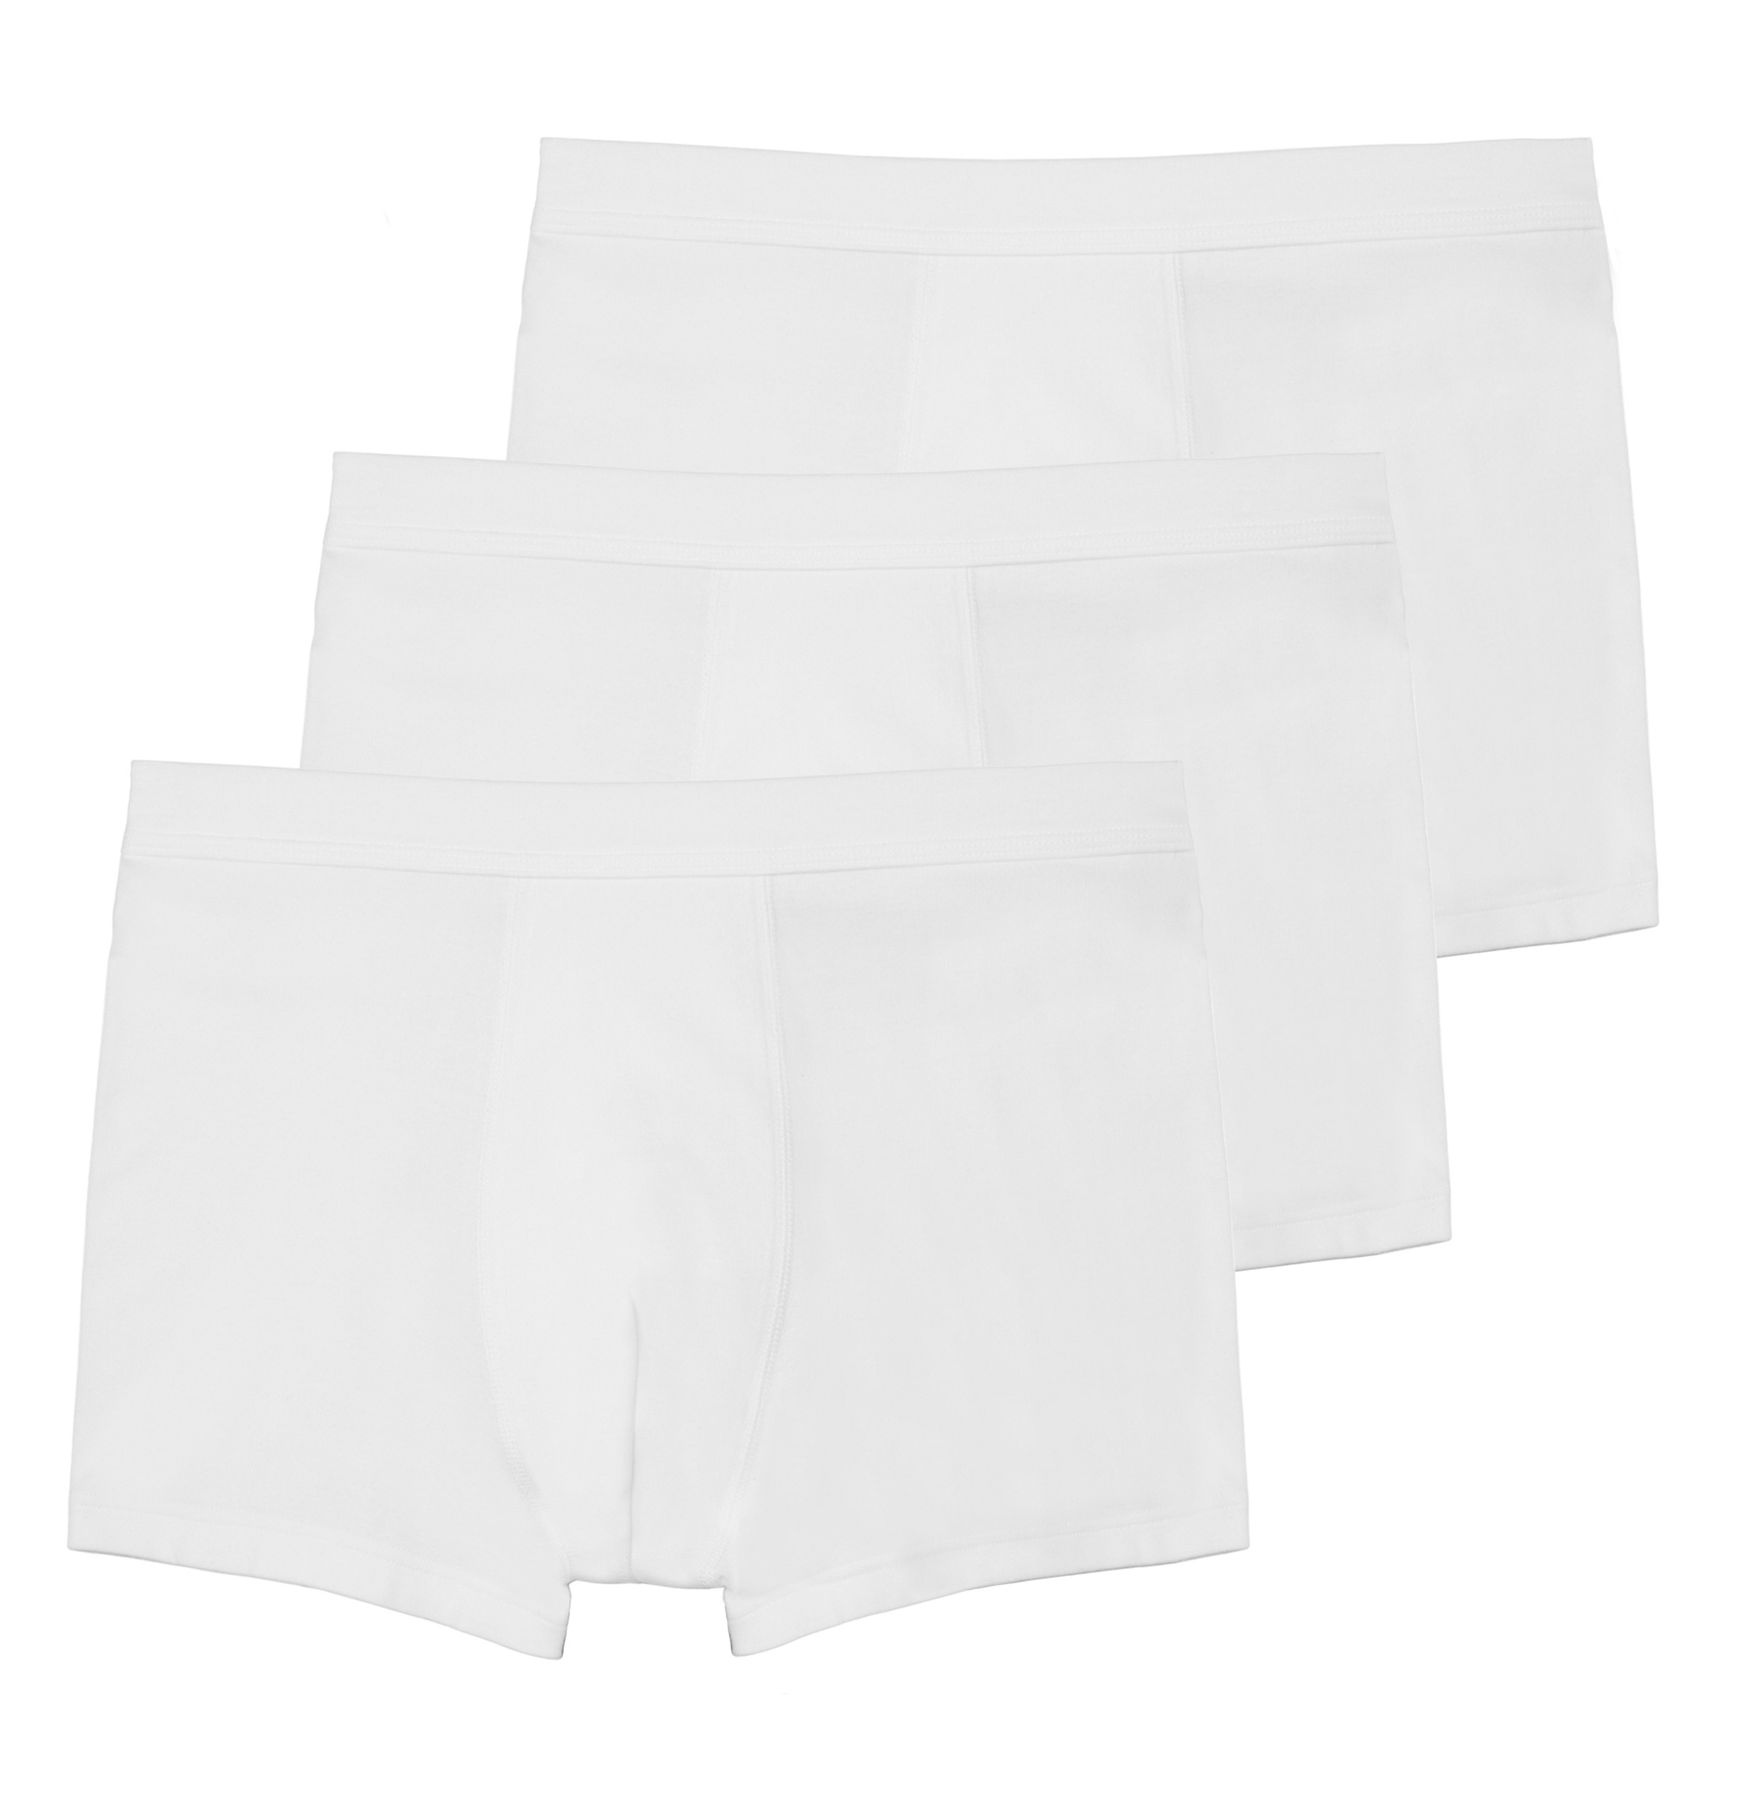 Боксеры Haasis Bodywear 3er-Set: Pants, белый фото